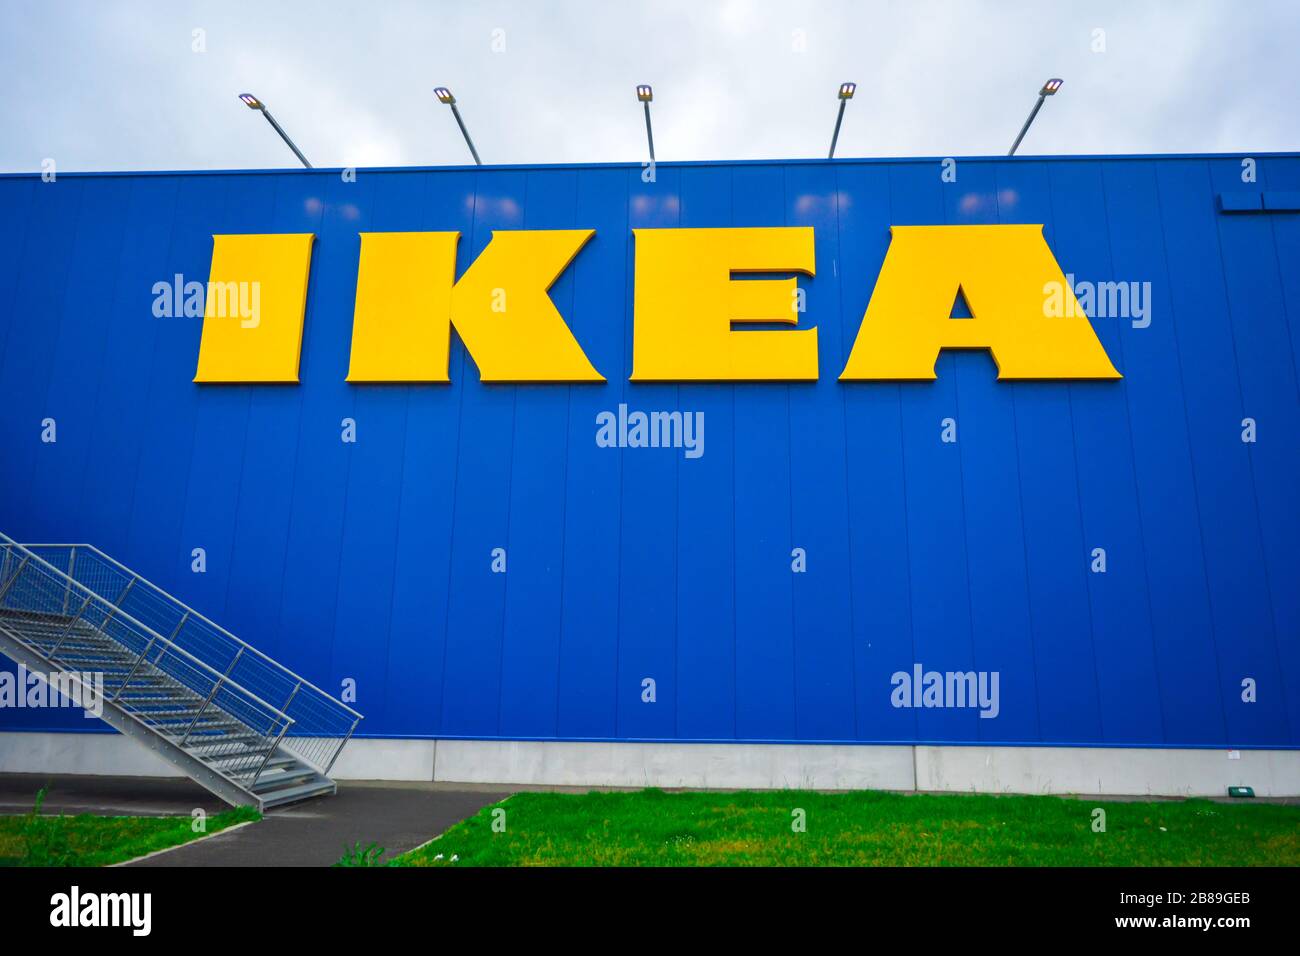 Nahaufnahme eines Ikea-Zeichens. Fassade der berühmten schwedischen Möbelhauskette. Davor ein schönes grünes Rasenfeld und eine Metallleiter. Stockfoto